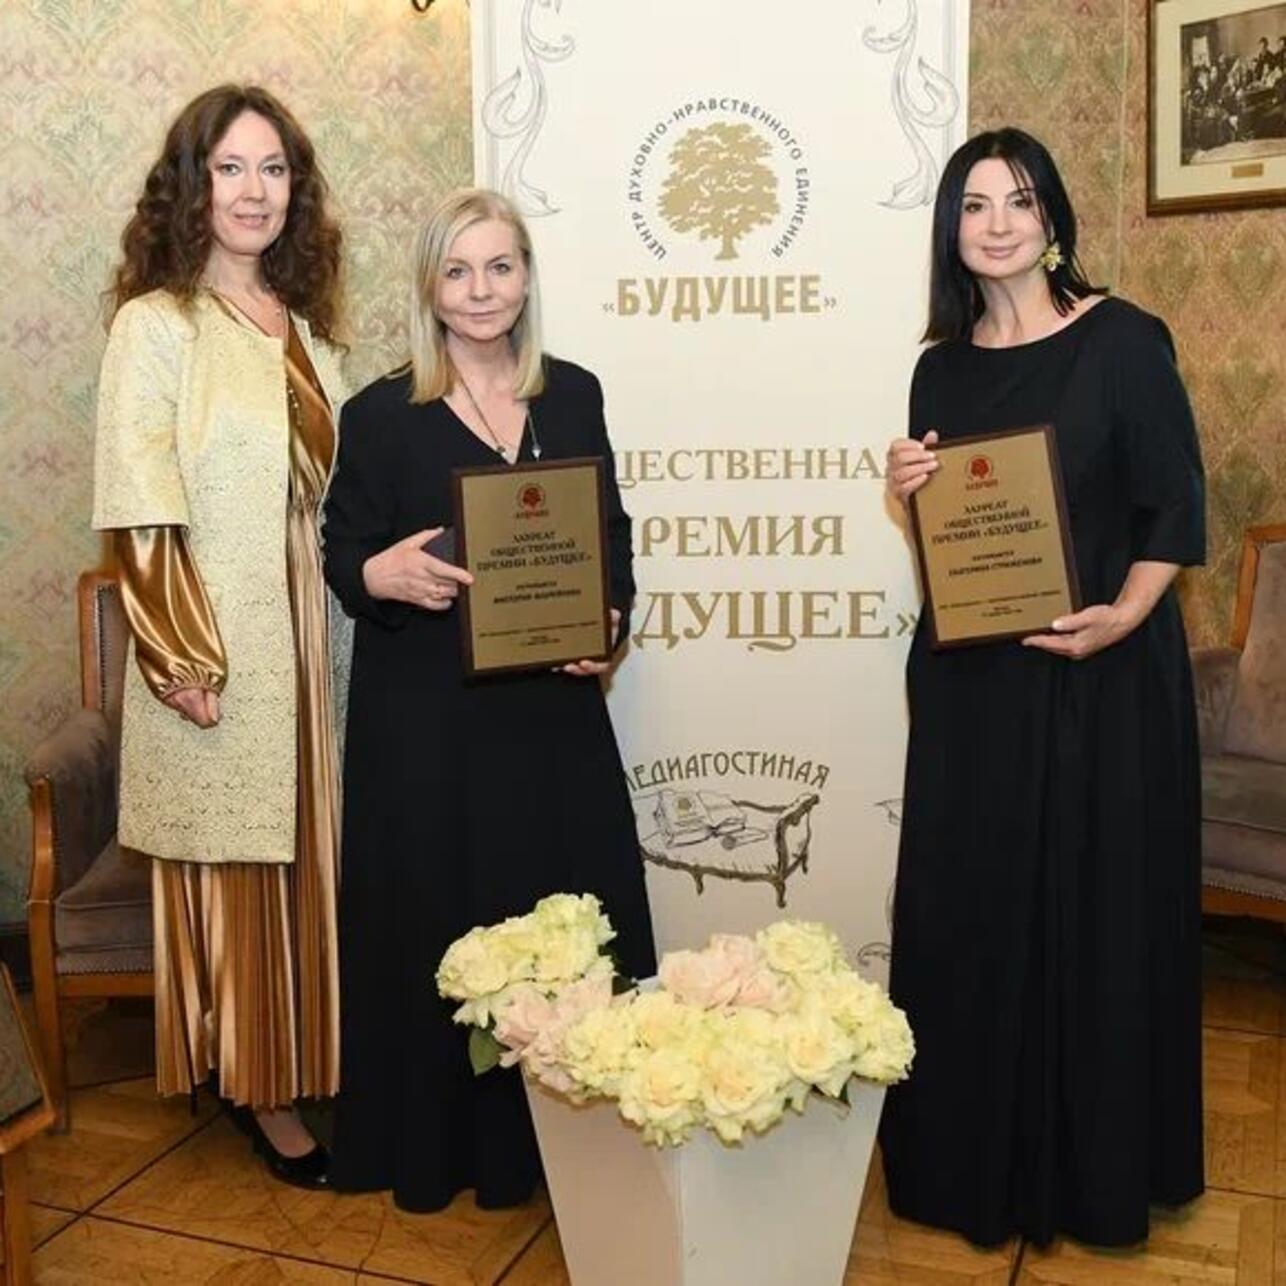 Екатерина Полозова, Виктория Андреянова и Екатерина Стриженова фото